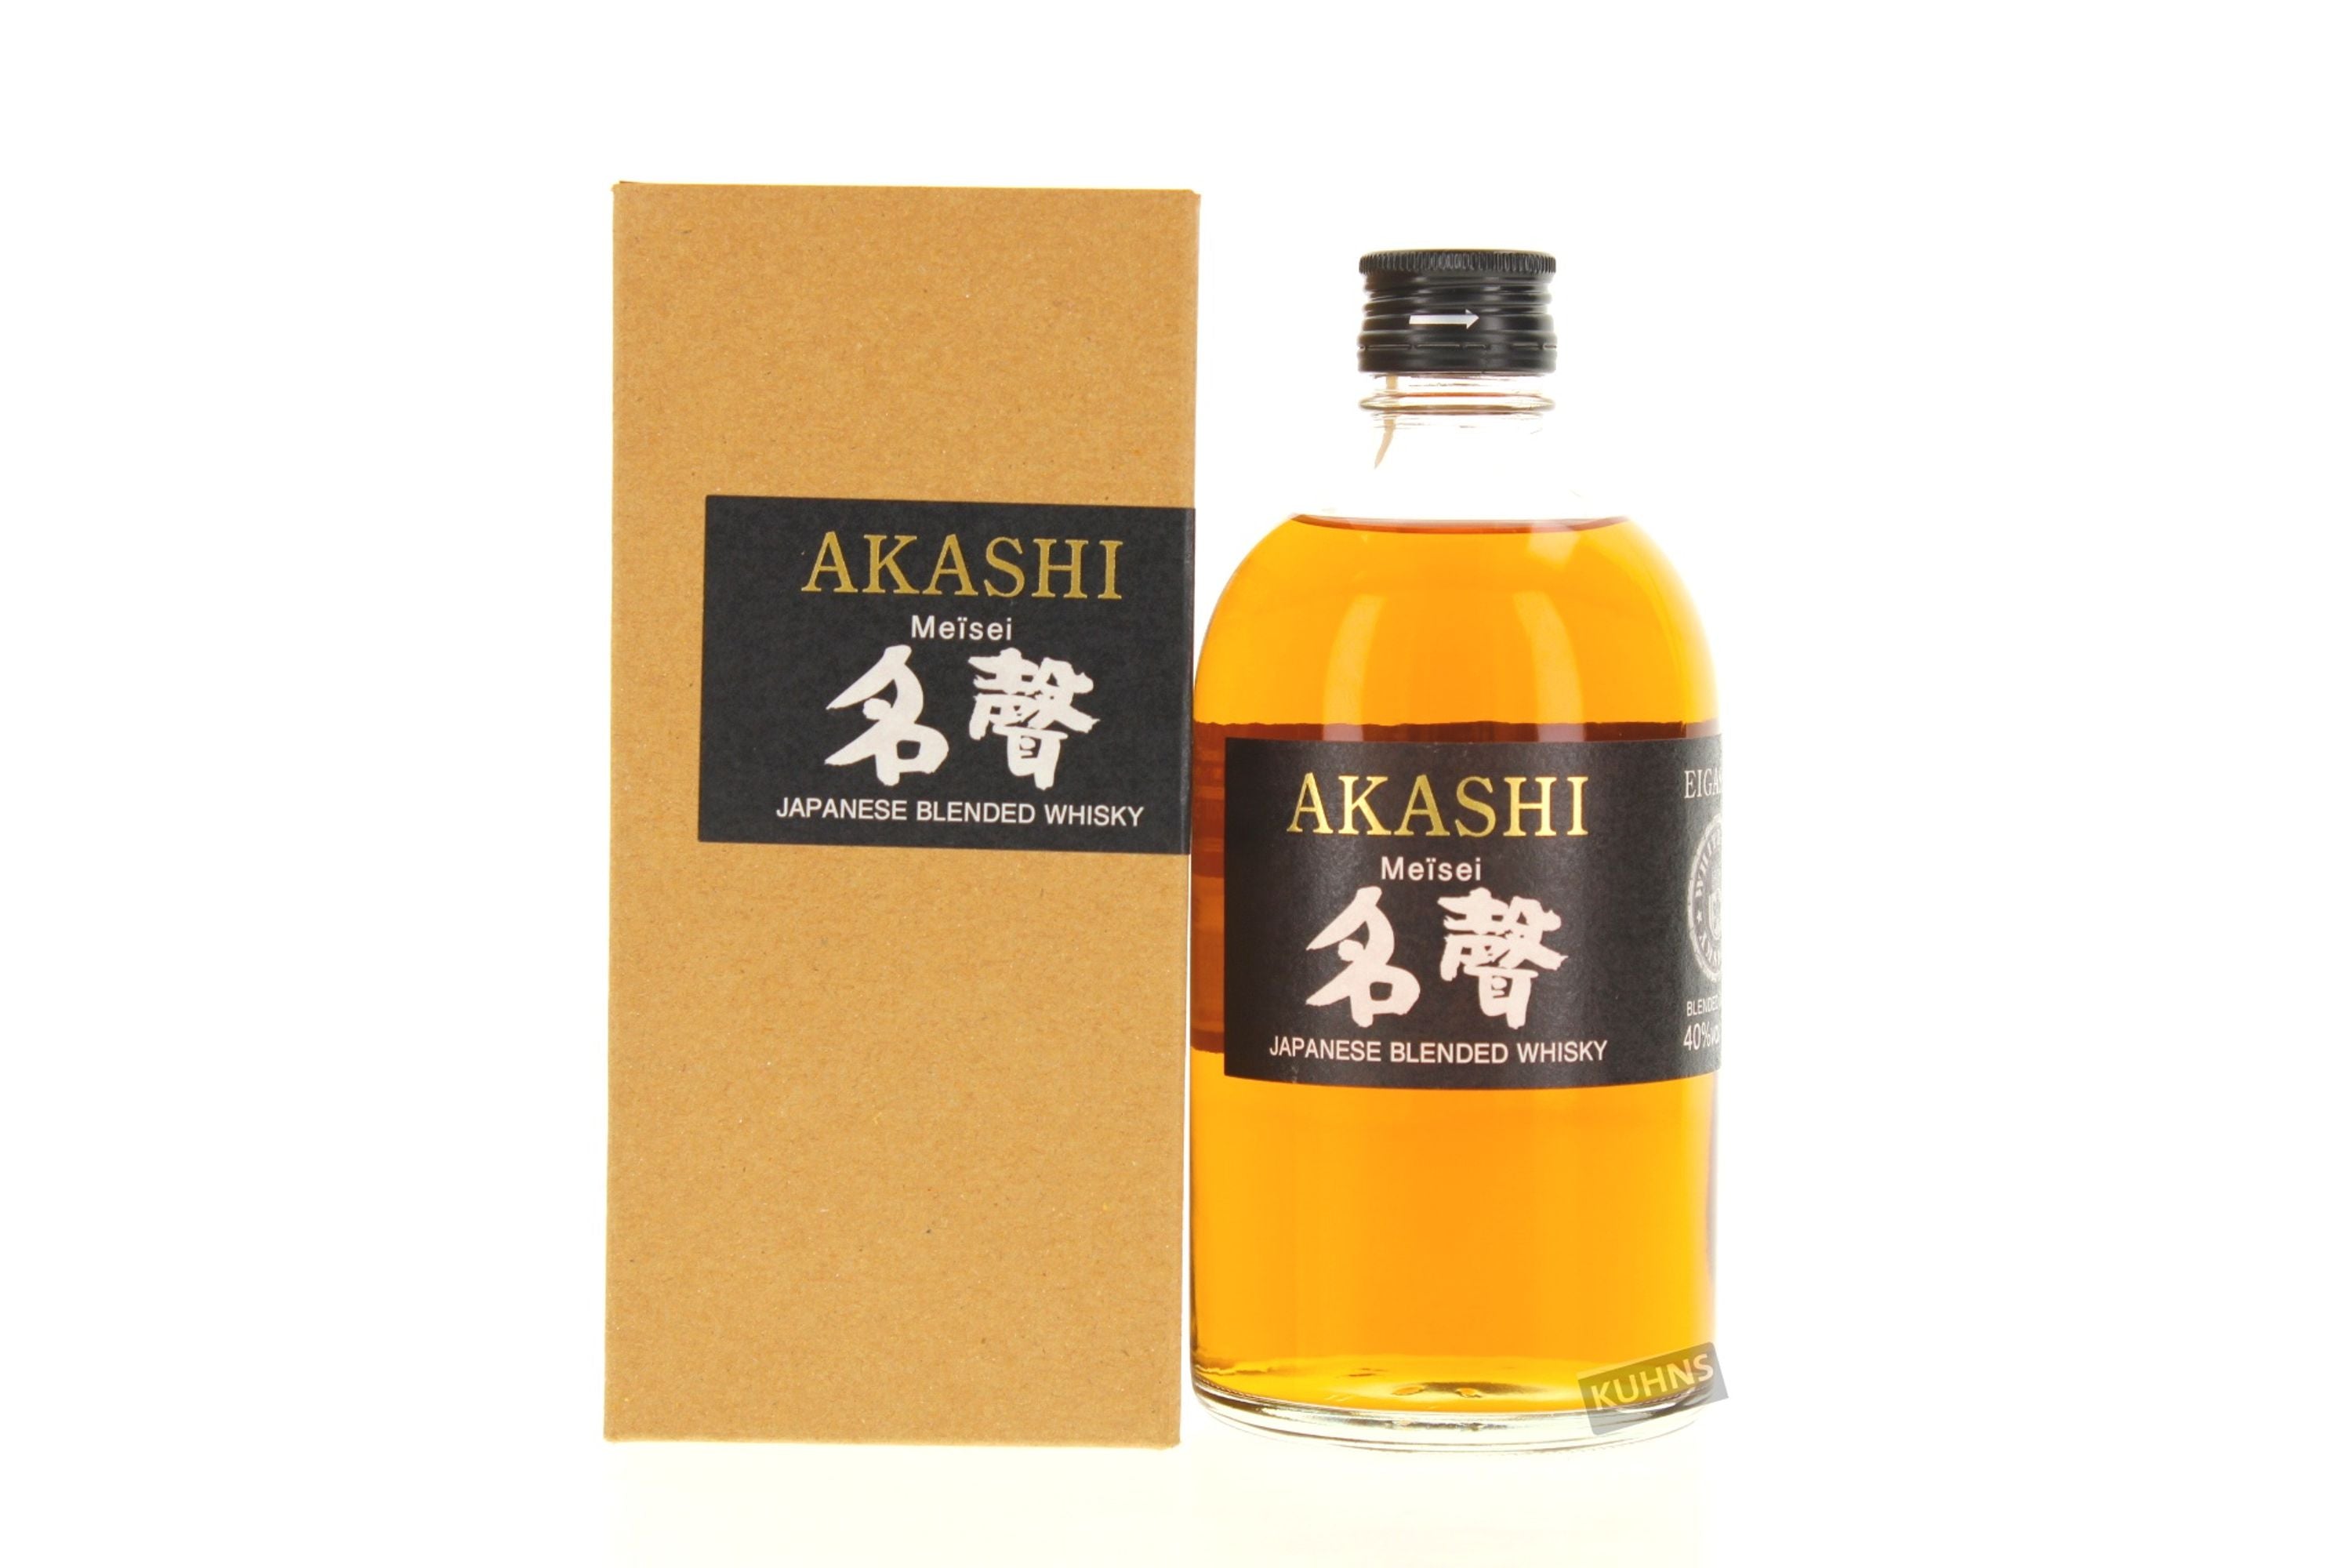 Akashi Meisei 0,5l, alk. 40 tilavuusprosenttia, Japan Blended Whisky